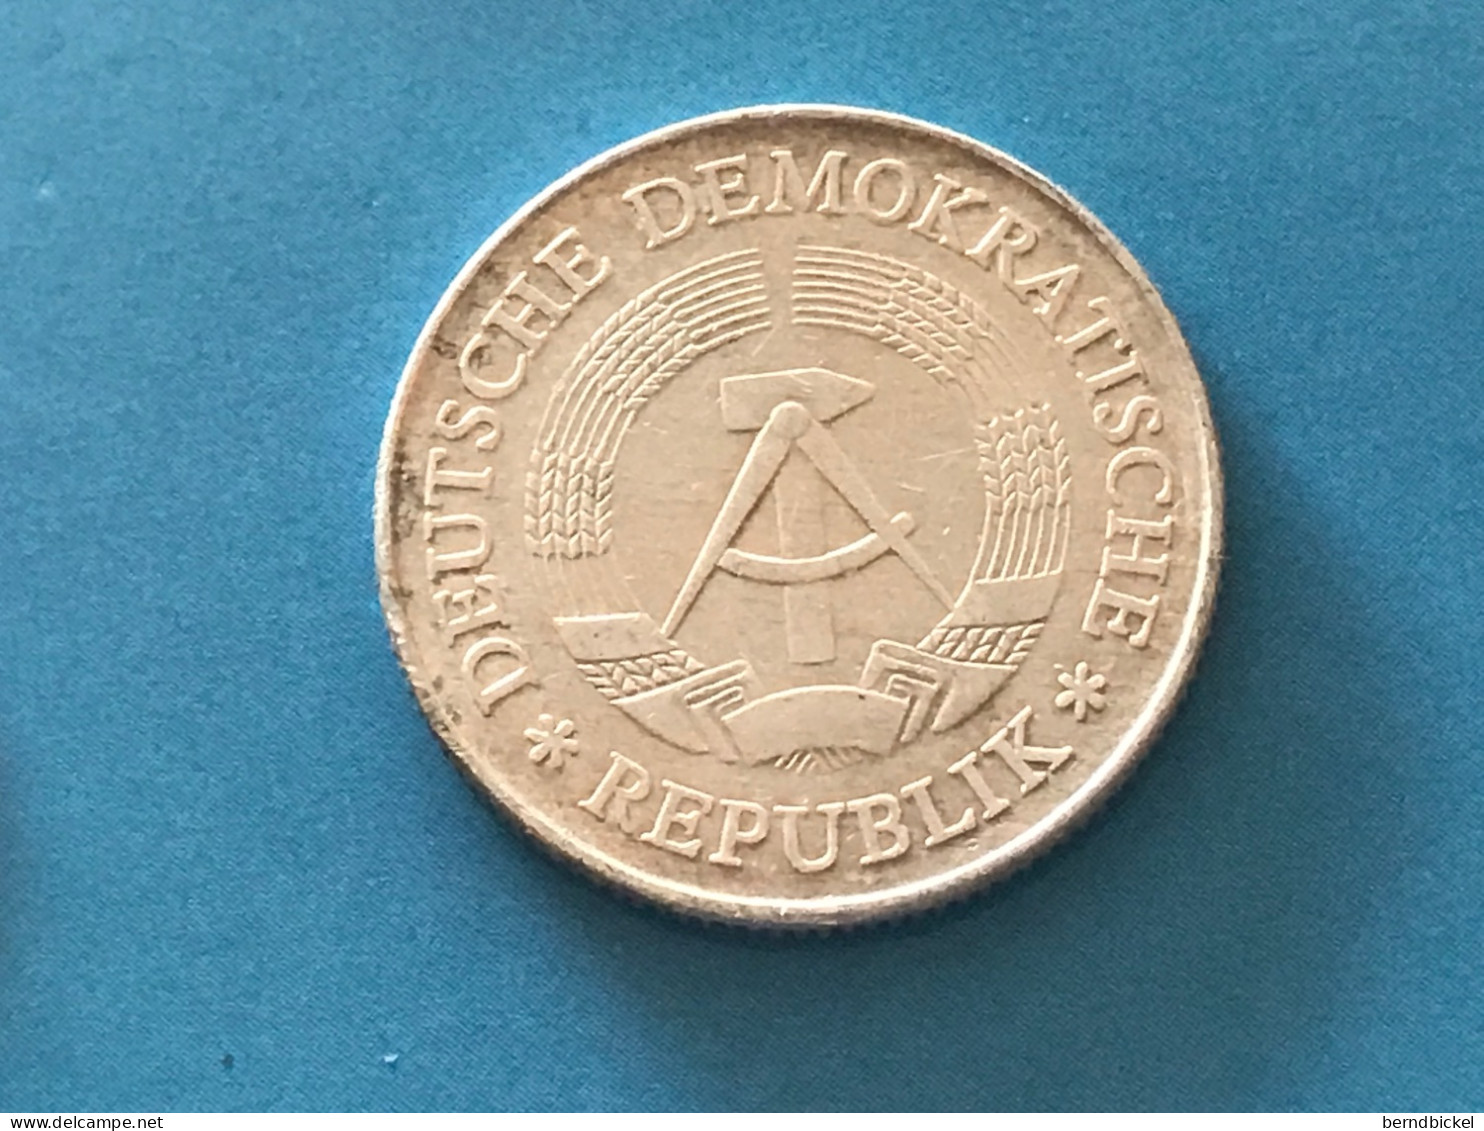 Münze Münzen Umlaufmünze Deutschland DDR 2 Mark 1977 - 2 Marchi